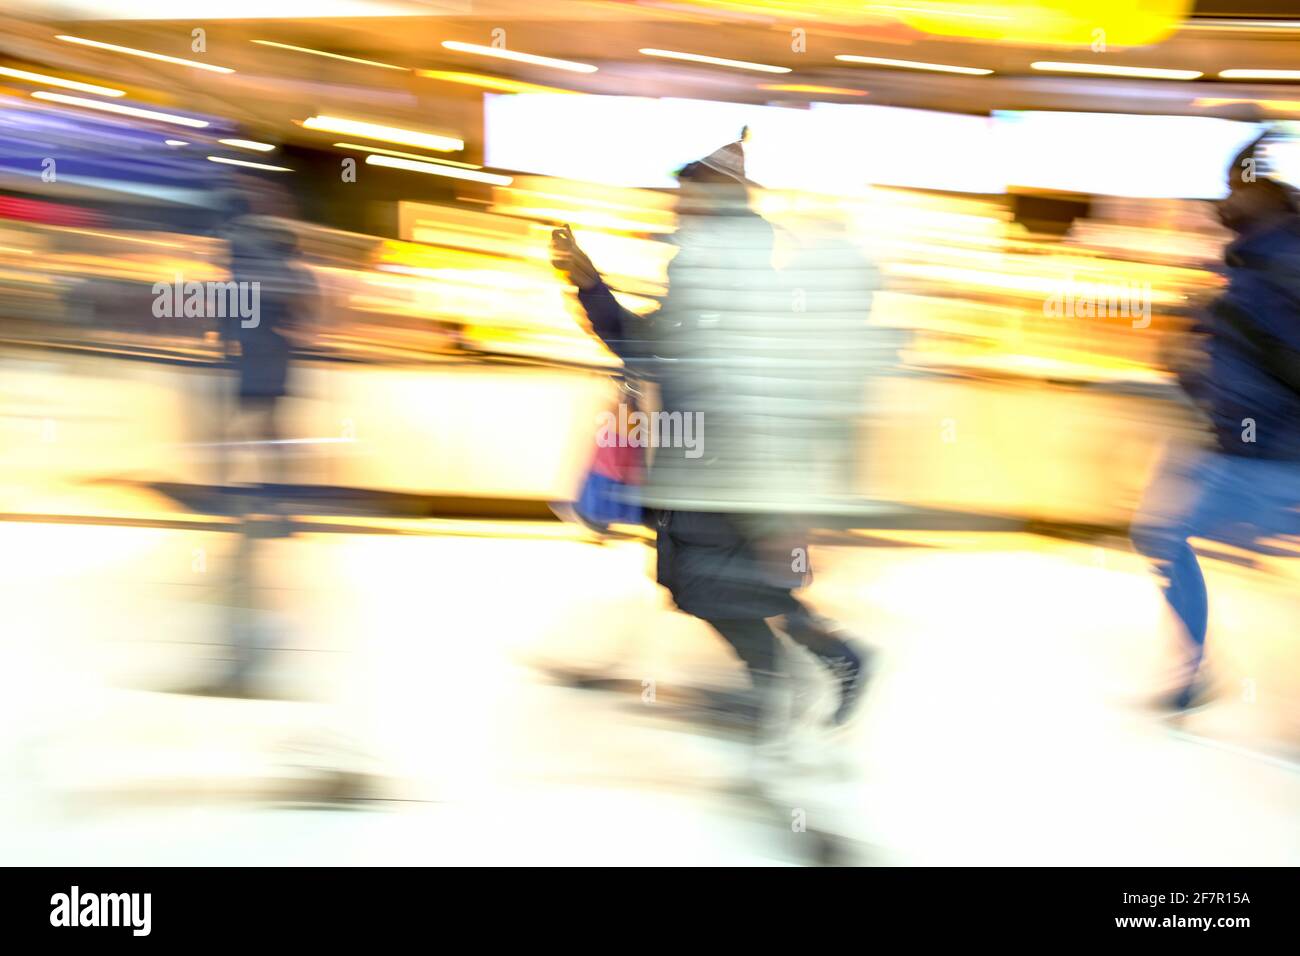 19.01.2019, Duesseldorf, Nordrhein-Westfalen, Deutschland - Menschen im Duesseldorfer Hauptbahnhof Stock Photo